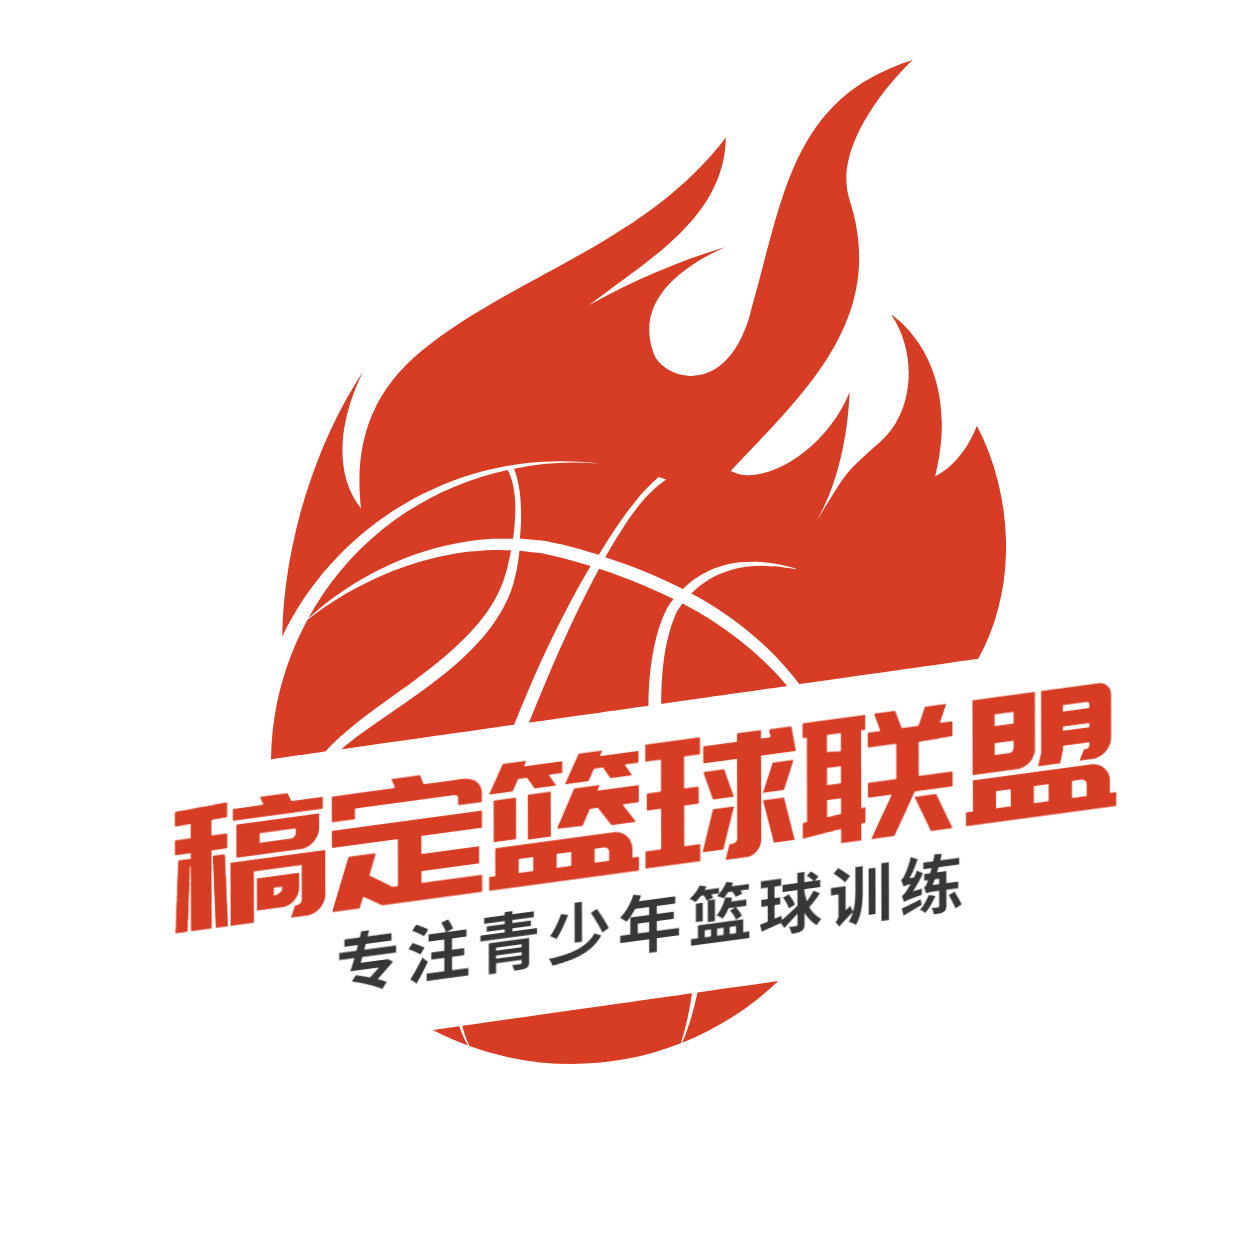 教育培训机构篮球馆标logo预览效果